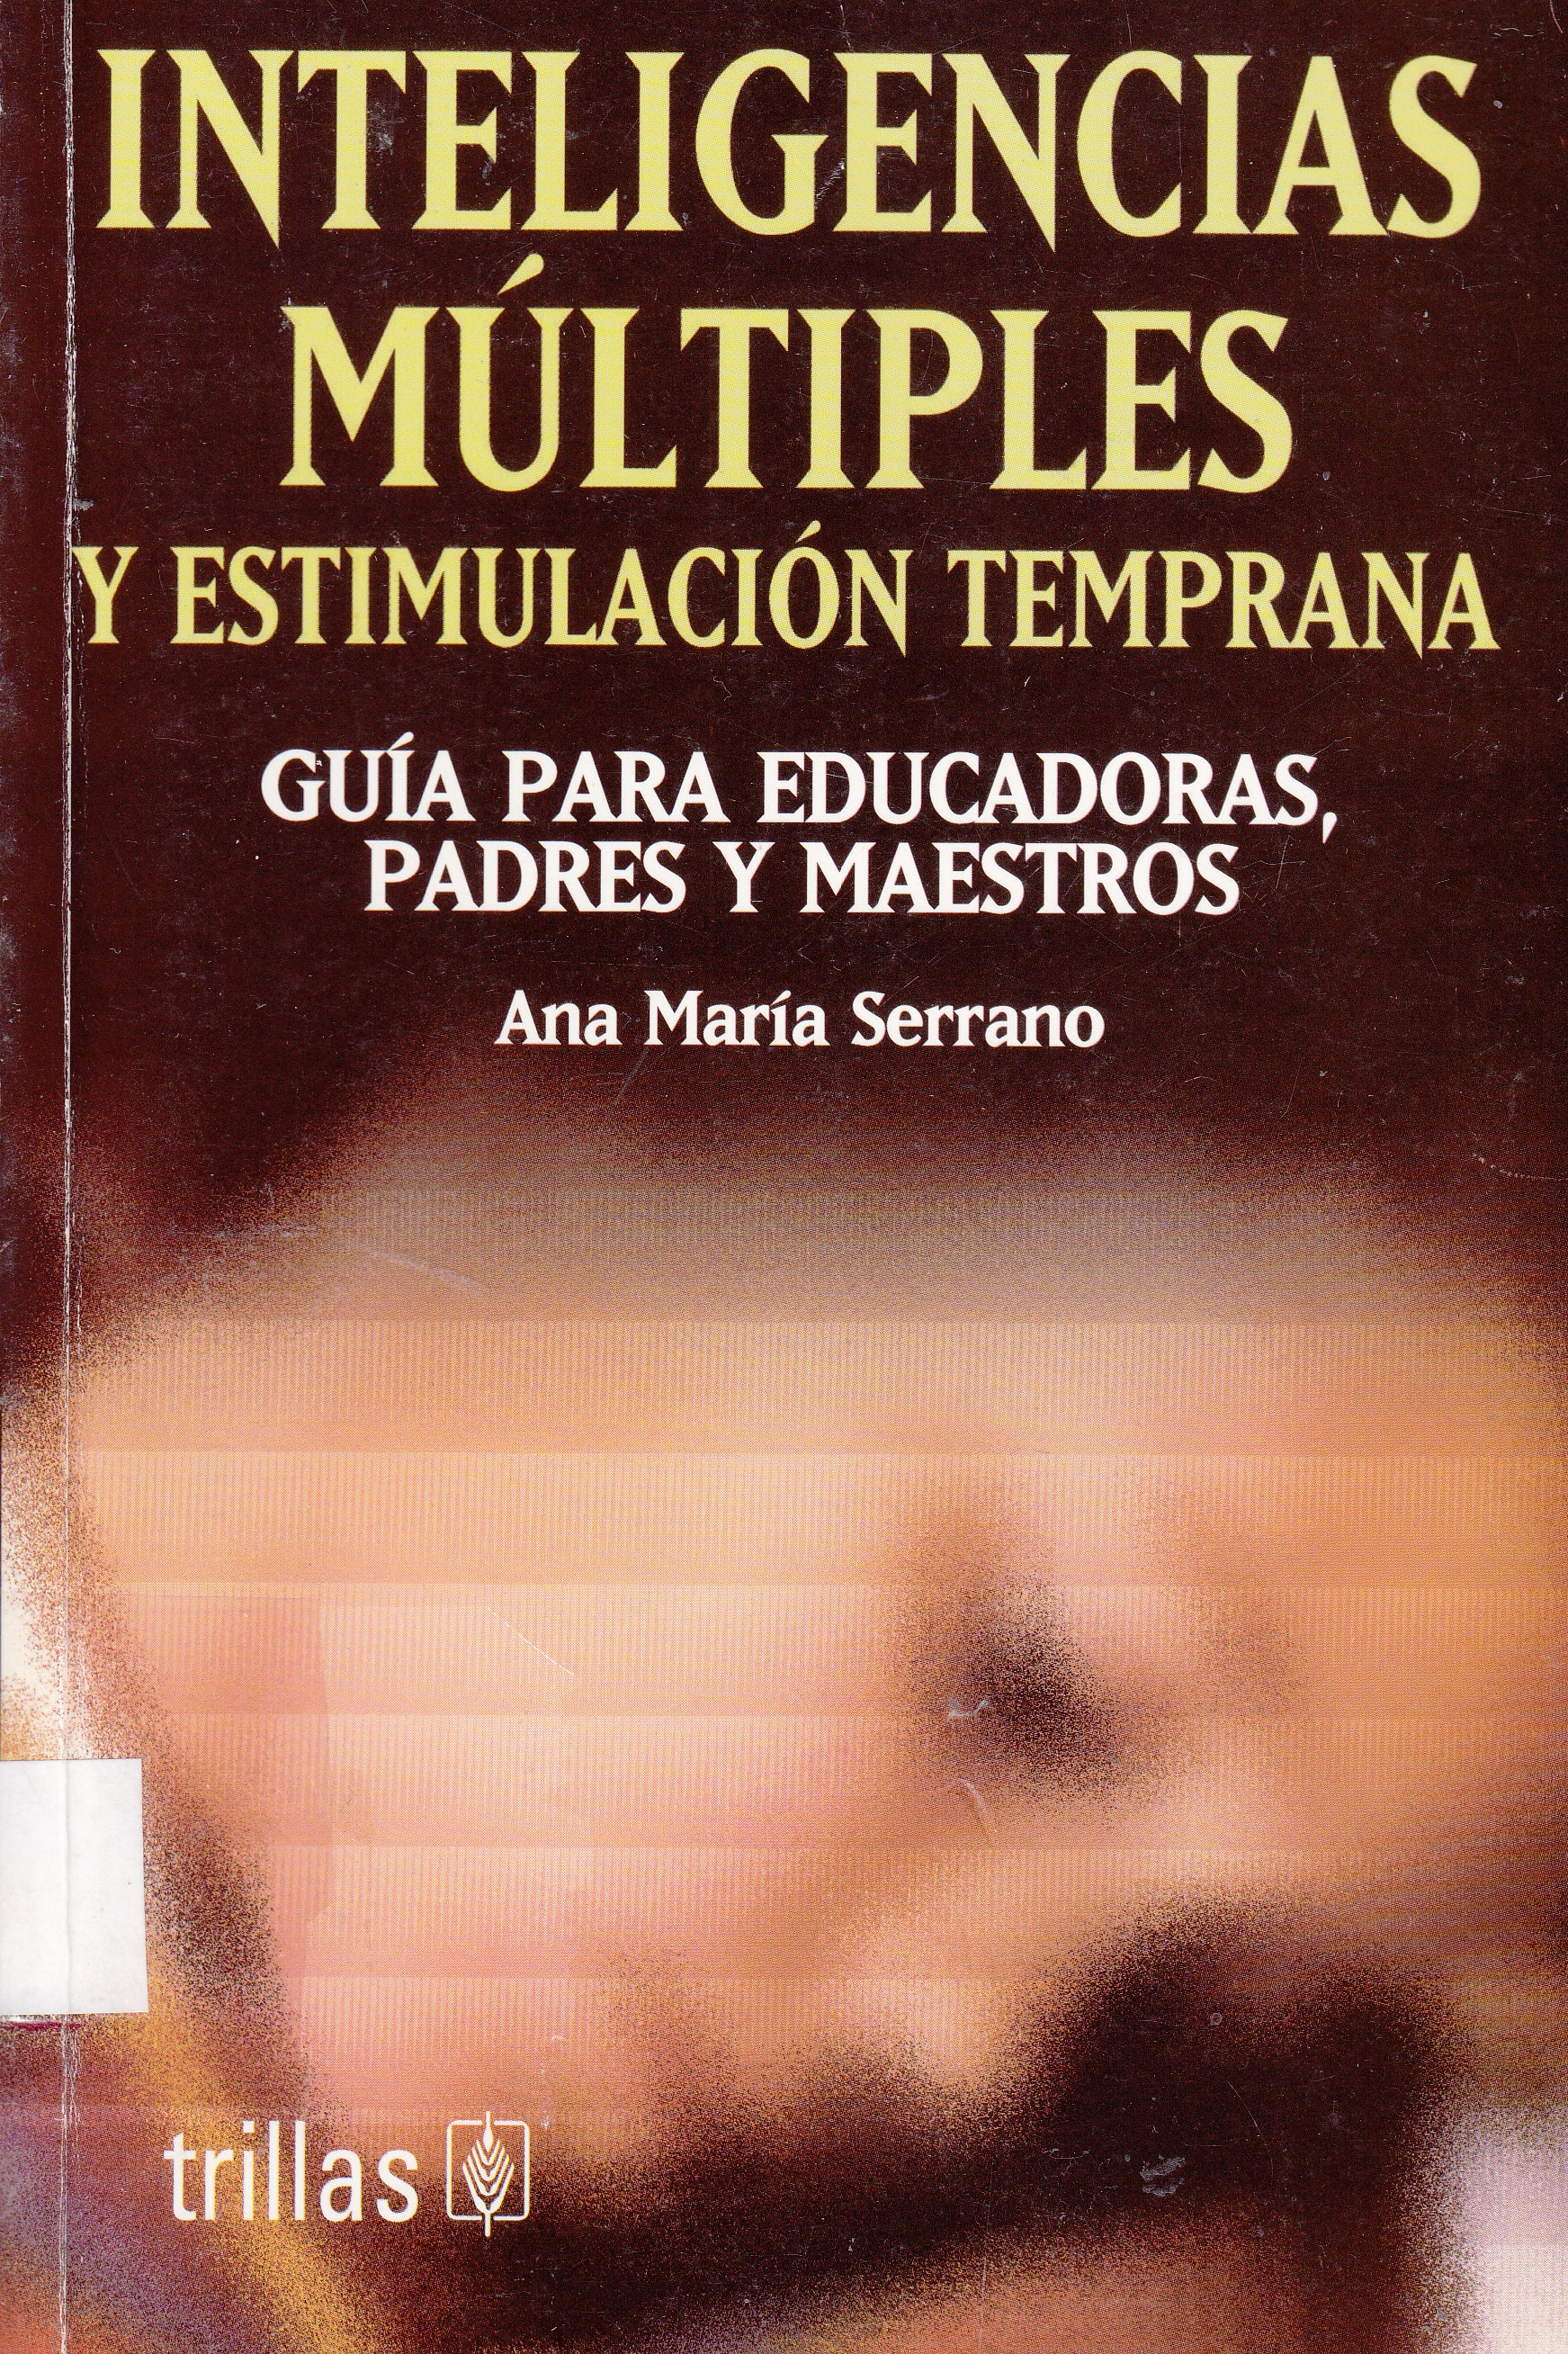  el libro de las letras , para niños de 1, 2 y 3 años (libros  para bebés de 0 a 3 años) (Spanish Edition) eBook : Molina, Martina: Tienda  Kindle